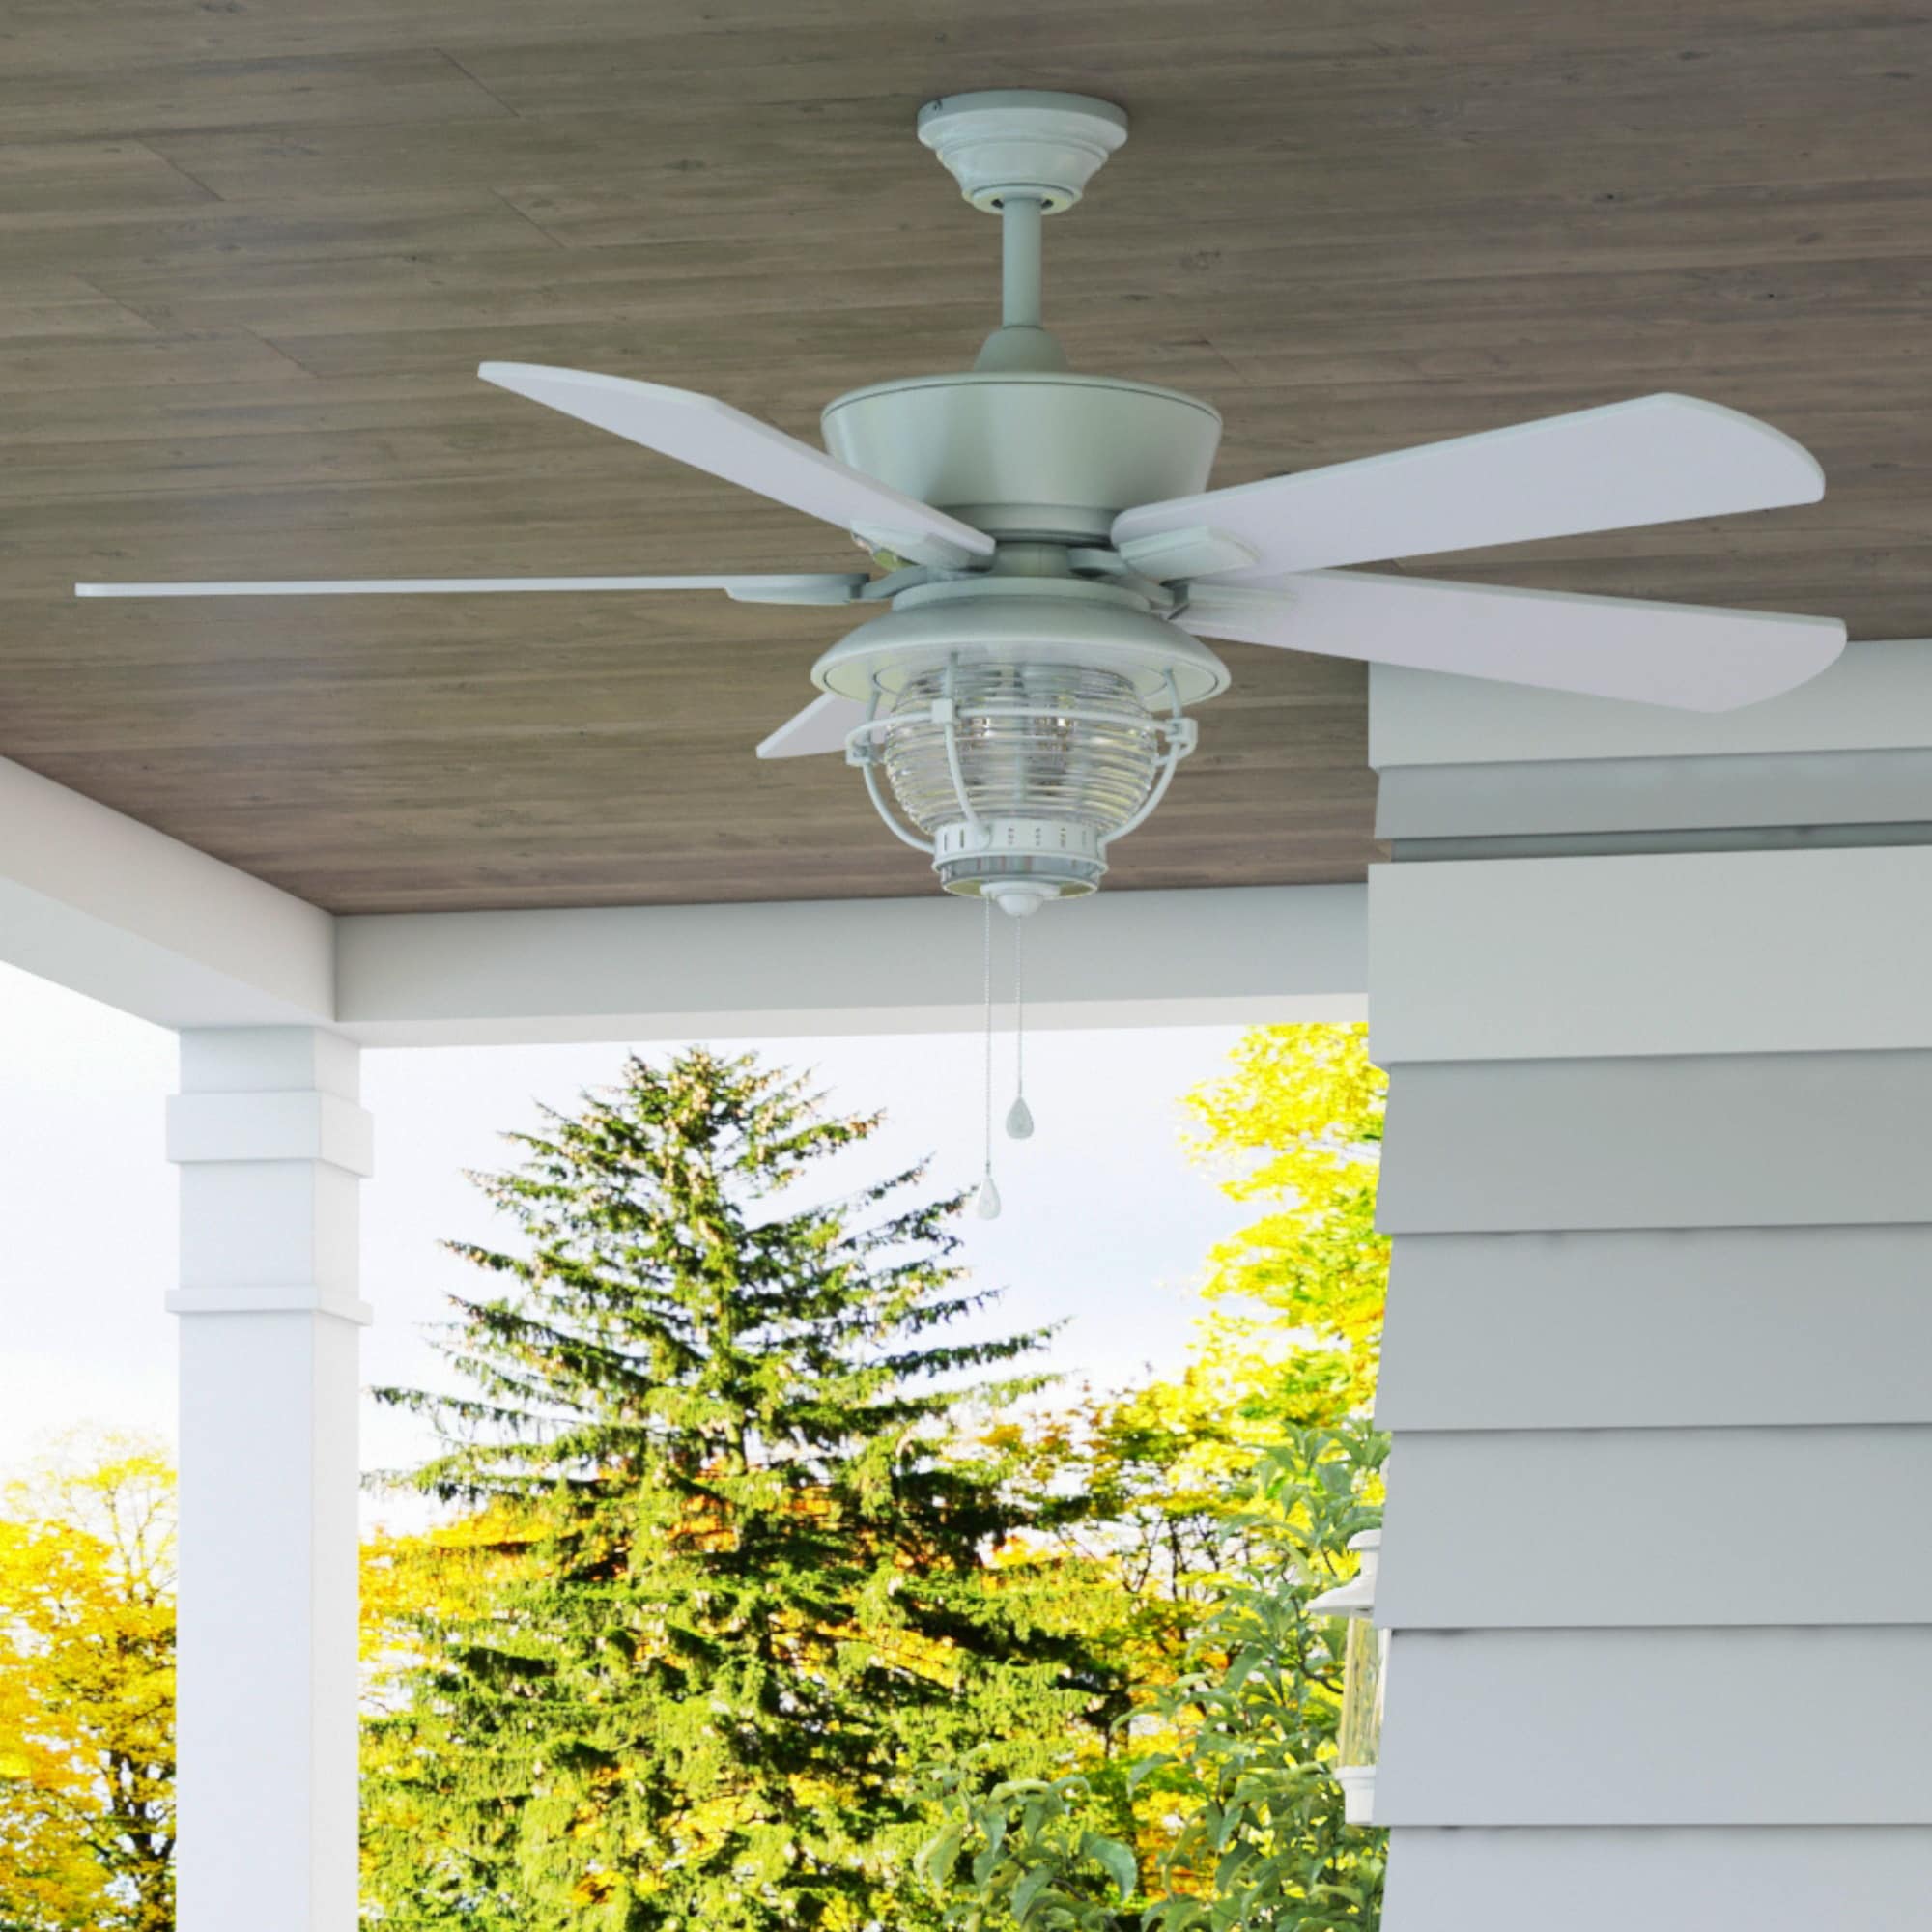 Harbor Breeze Merrimack II 52-in White Indoor/Outdoor Ceiling Fan 